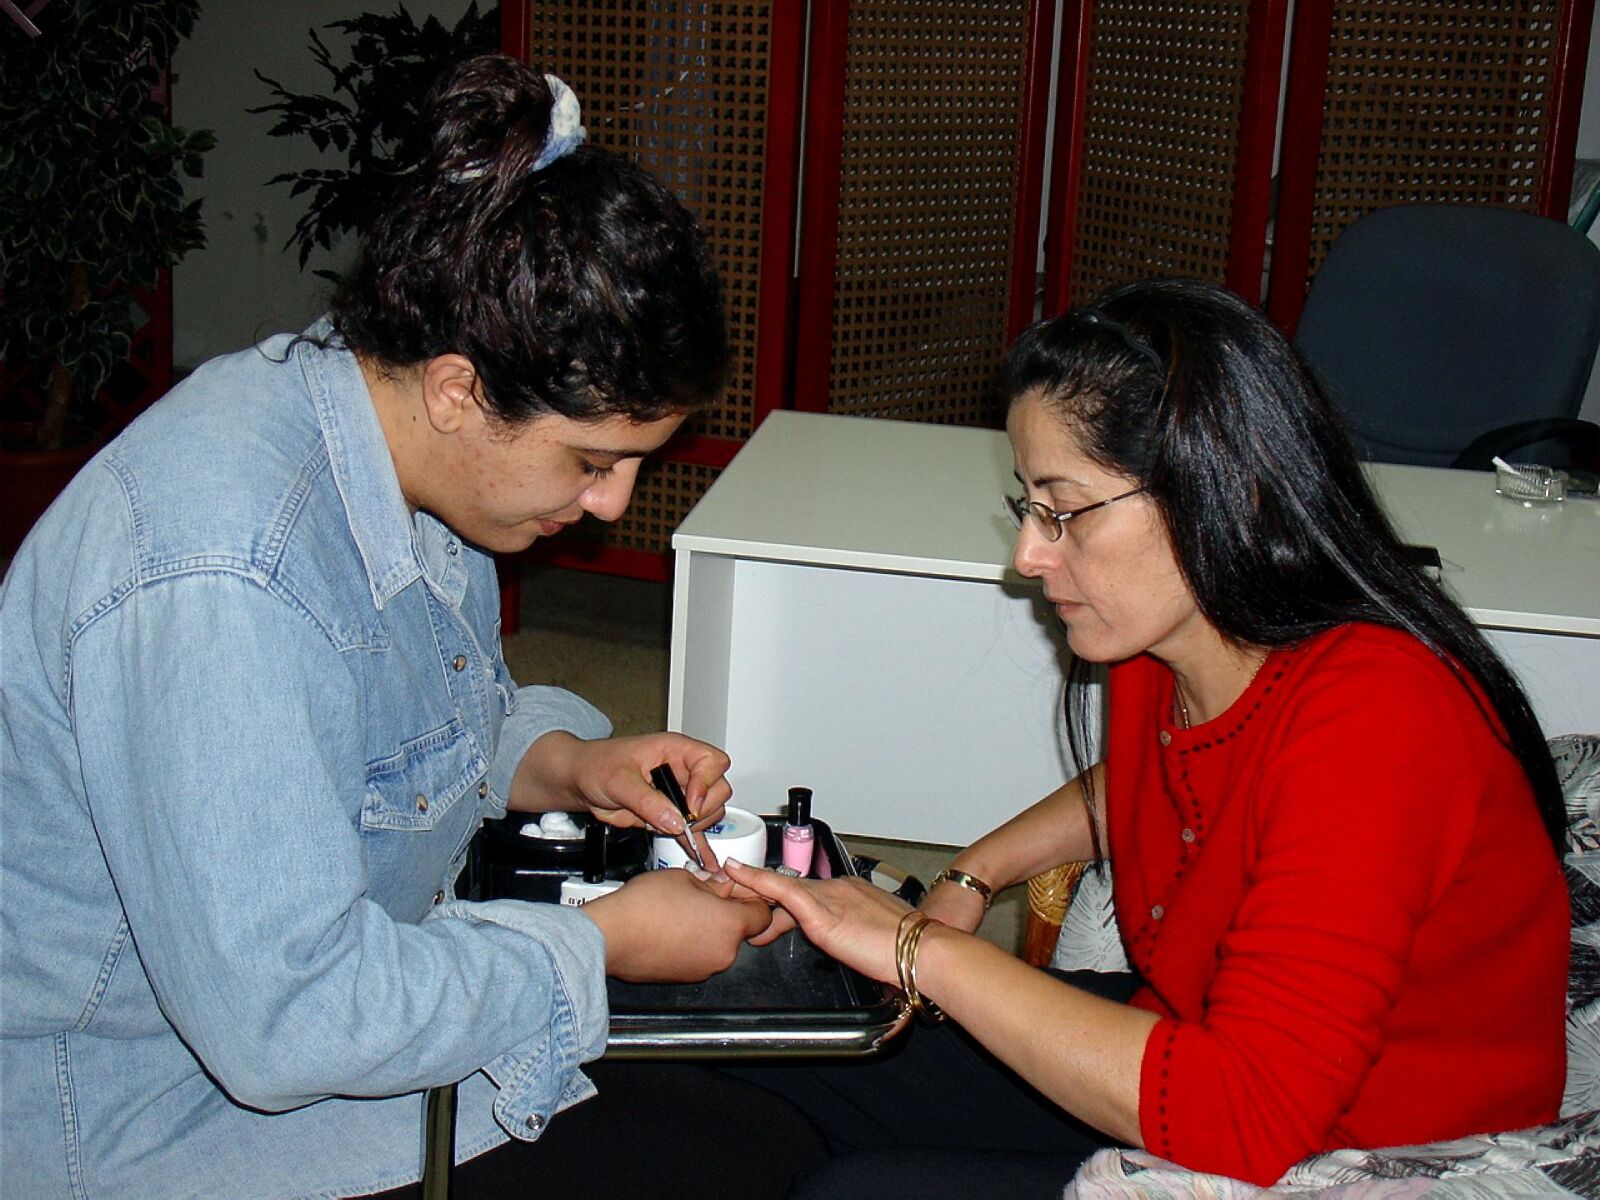 Sony DSC-V1 sample photo. Unidentified, employee, manicure, salon photography